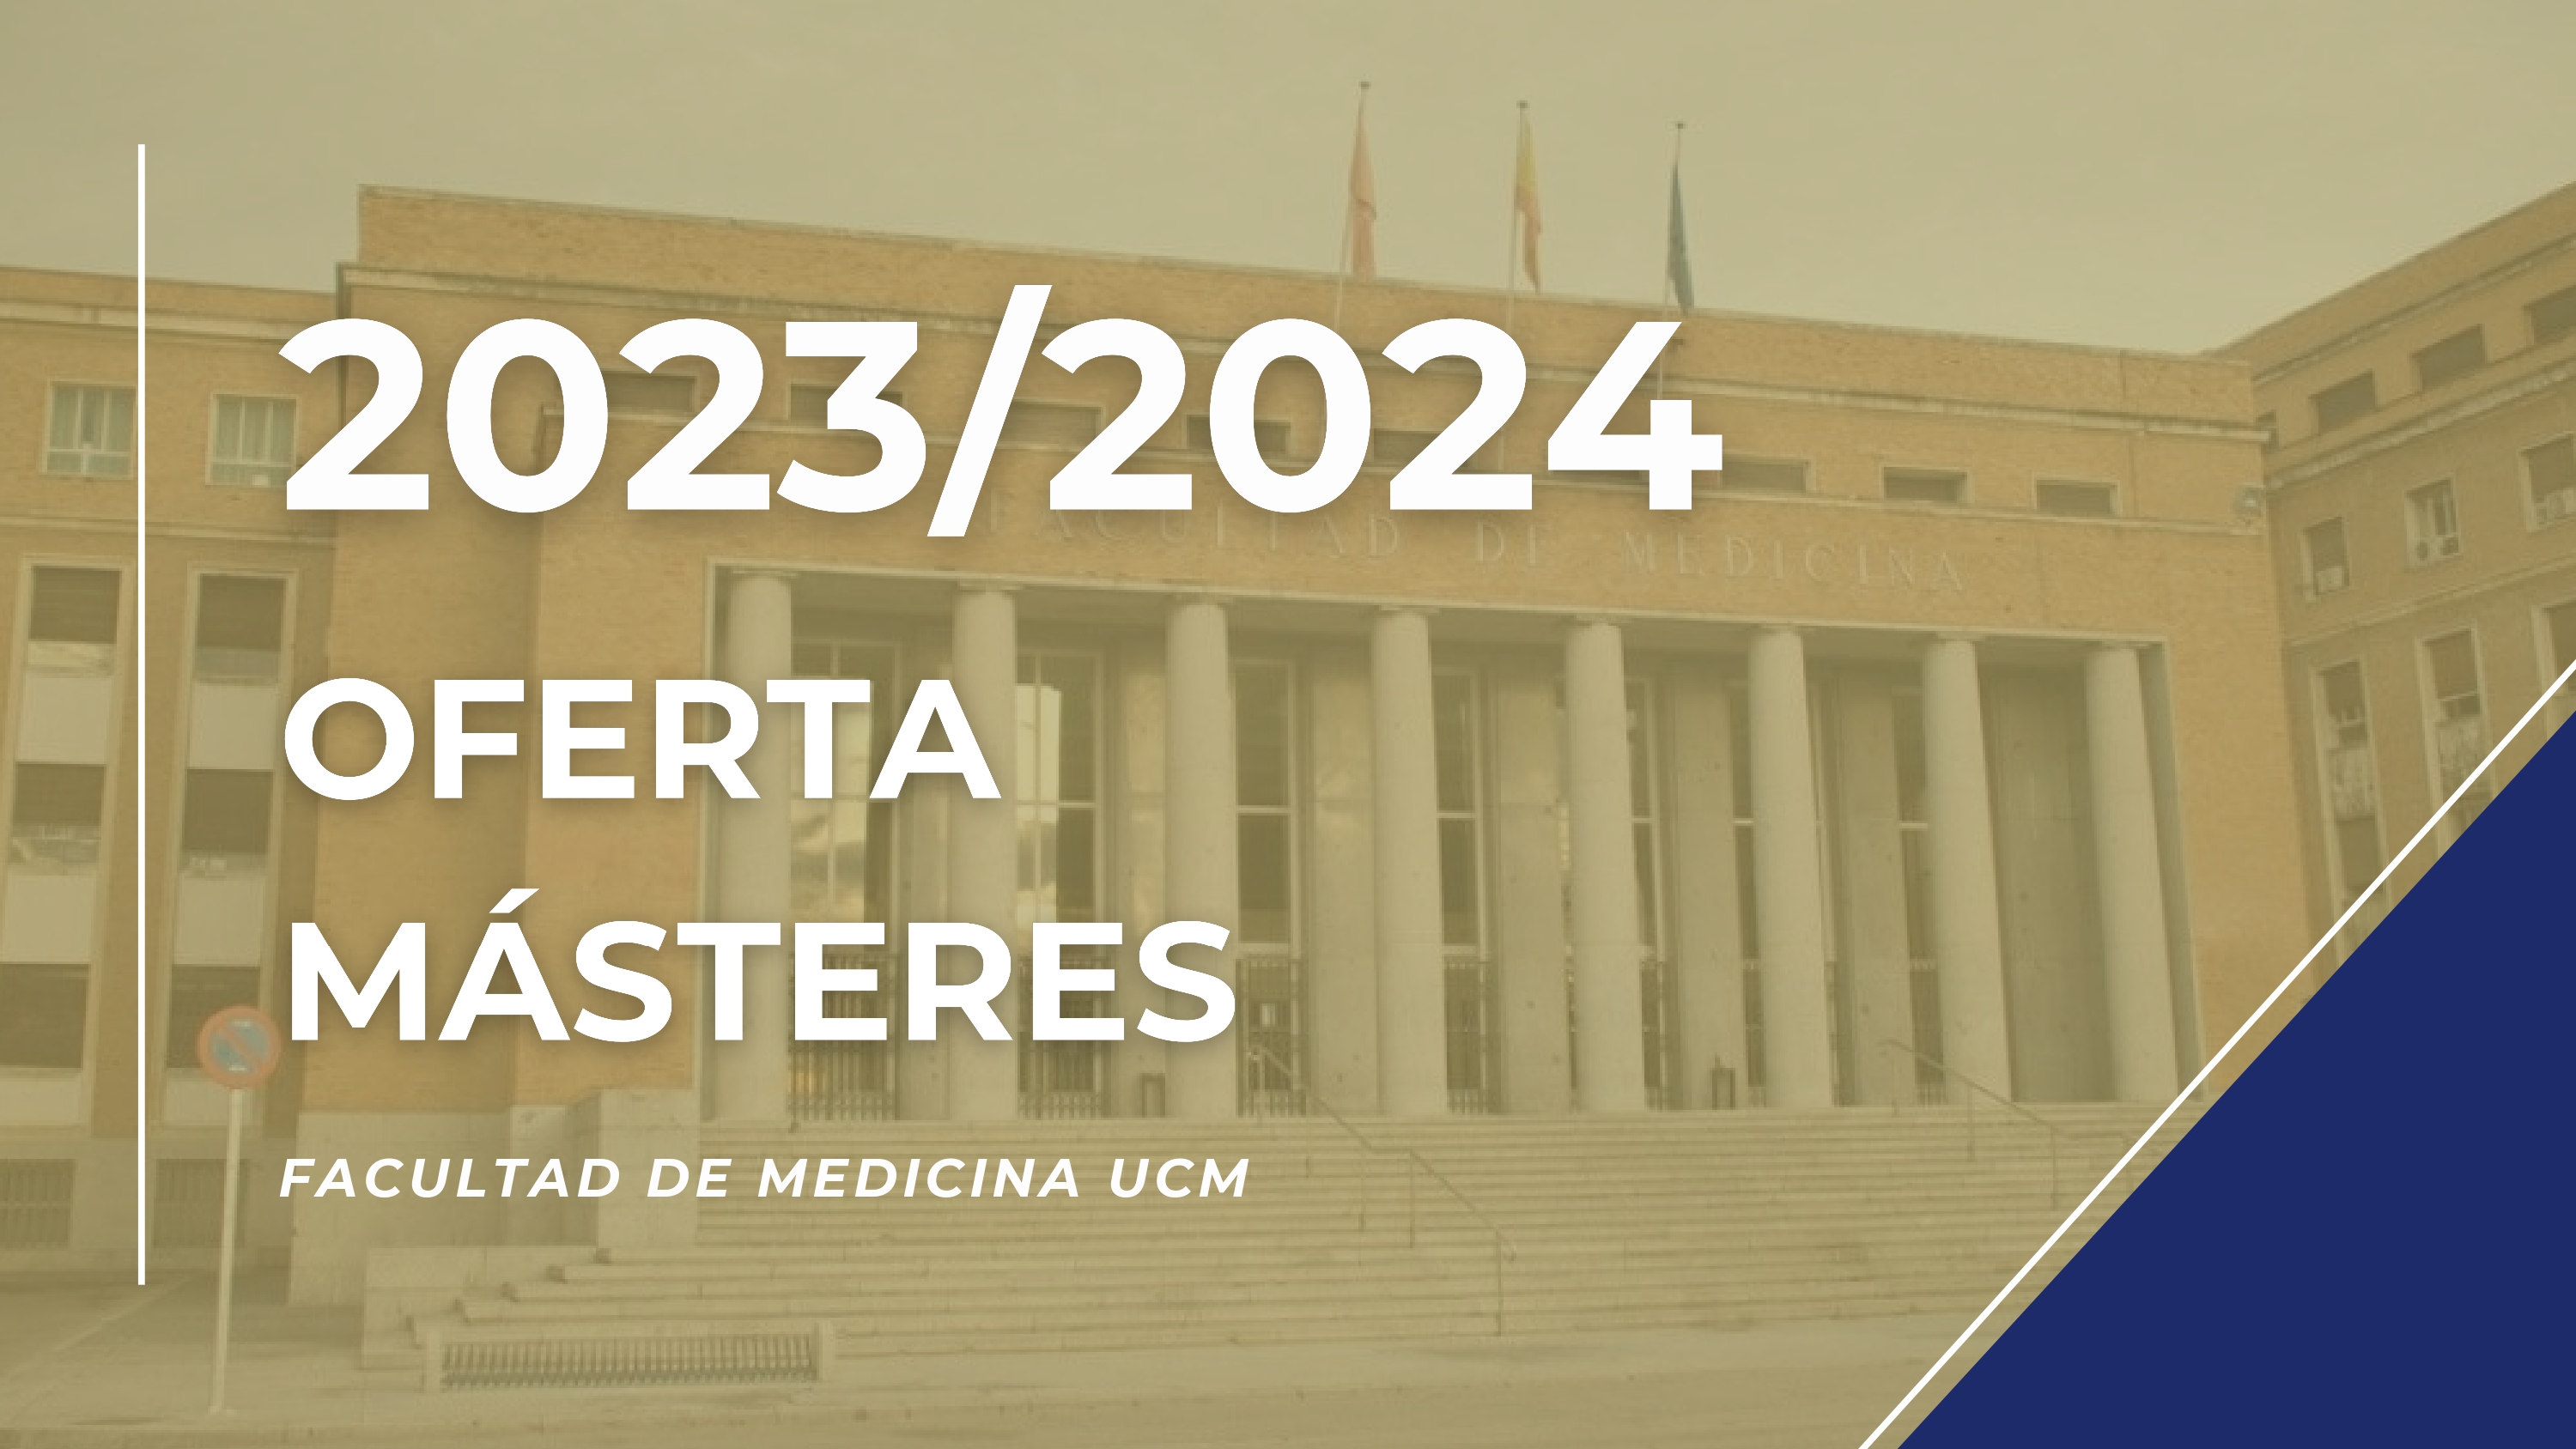 OFERTA MÁSTERES FACULTAD DE MEDICINA. CURSO 2023/2024